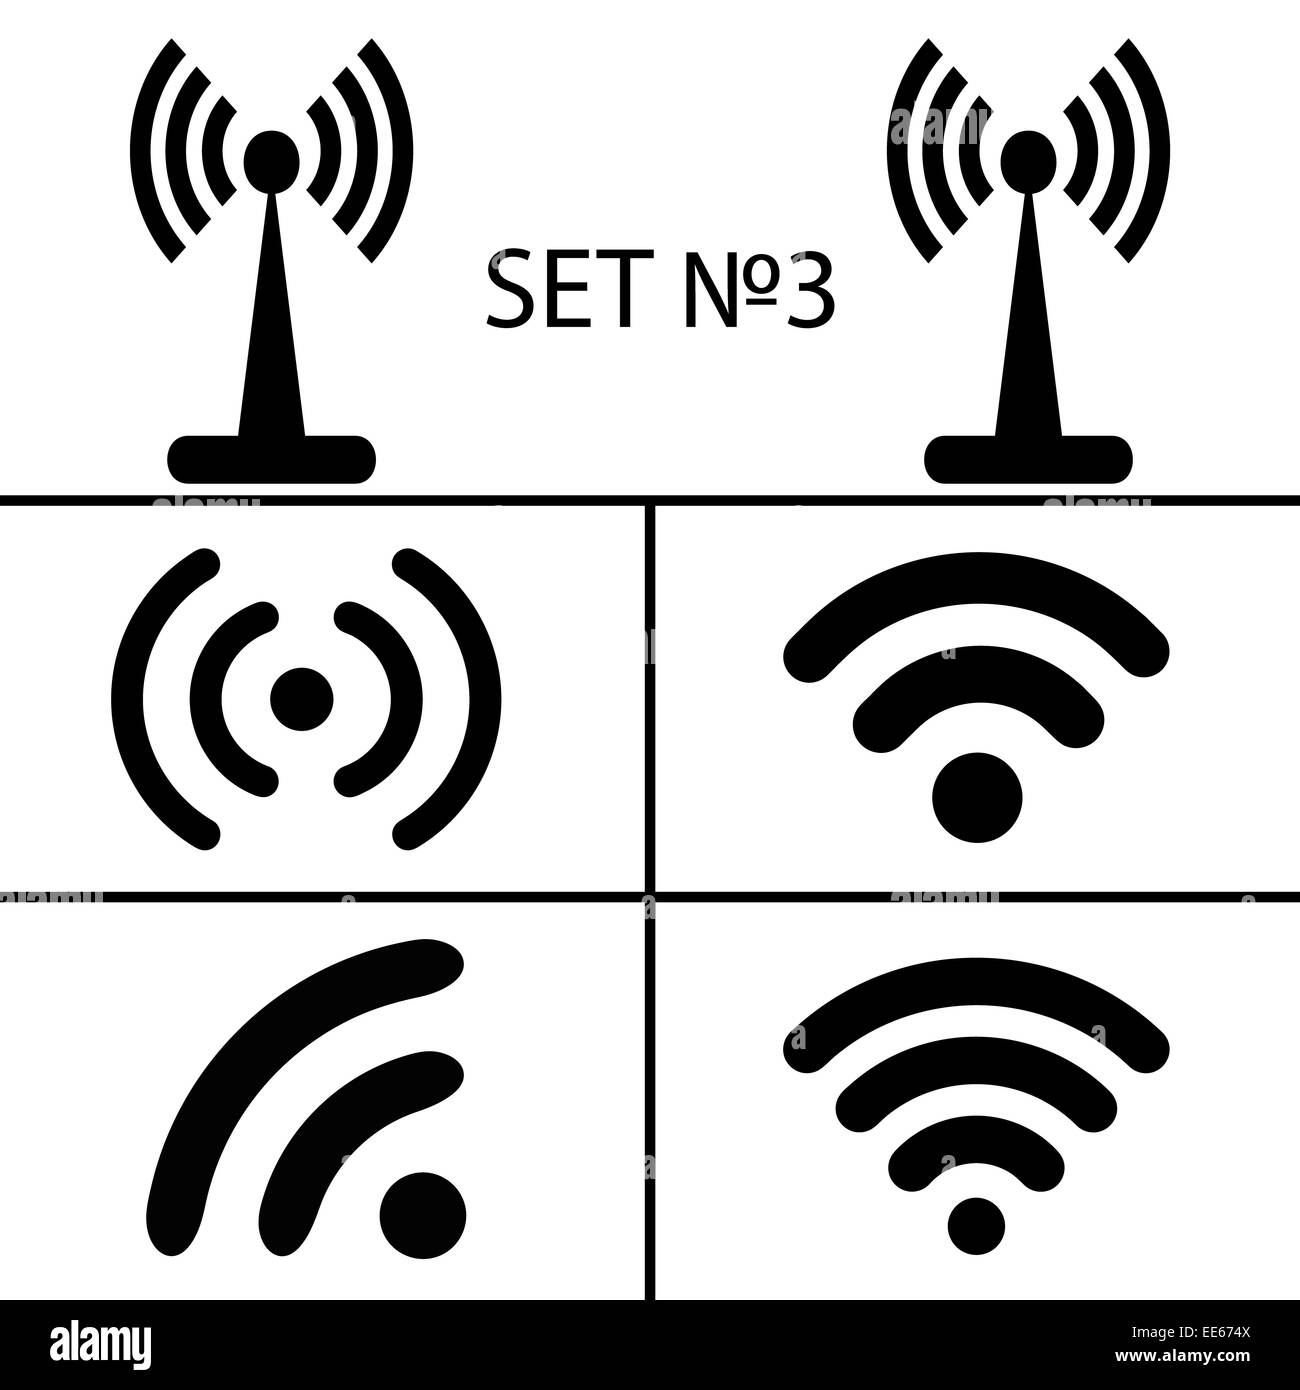 Set 3. Sans fil noire et quatorze différents icônes wifi pour l'accès à distance La communication par ondes radio. Illustration vecteur EPS10 Banque D'Images